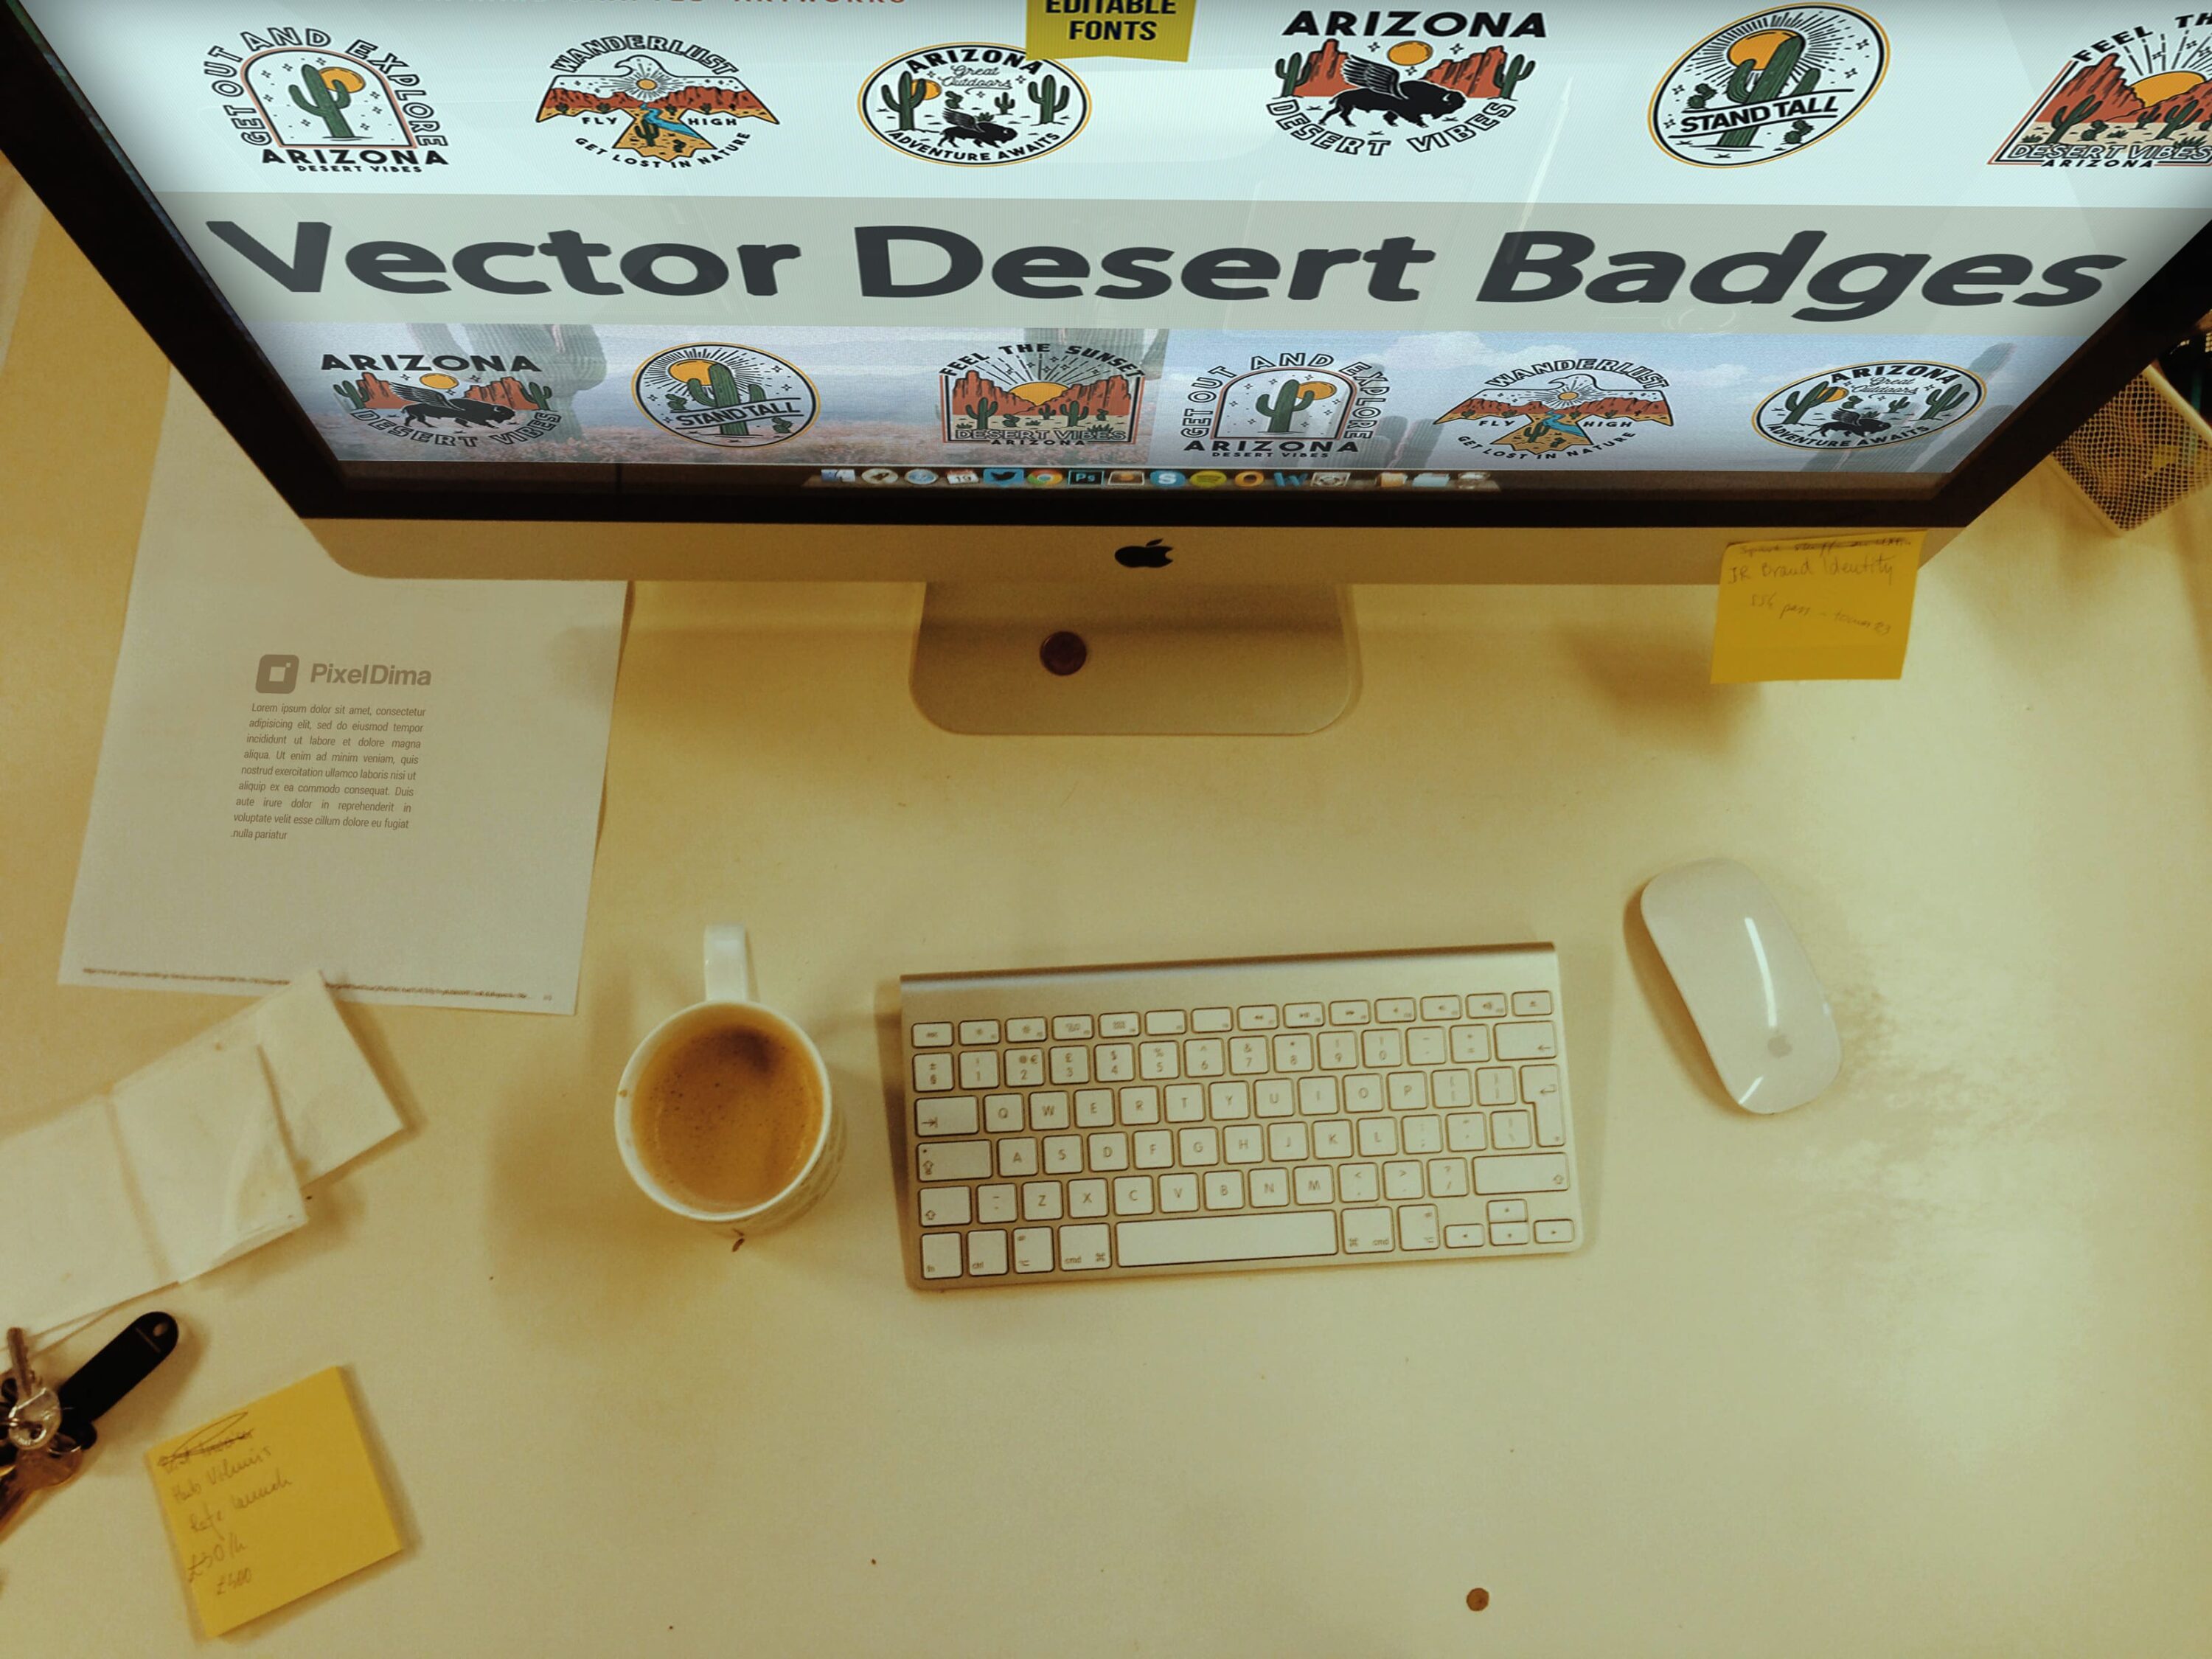 Desktop option of the Vector Desert Badges.